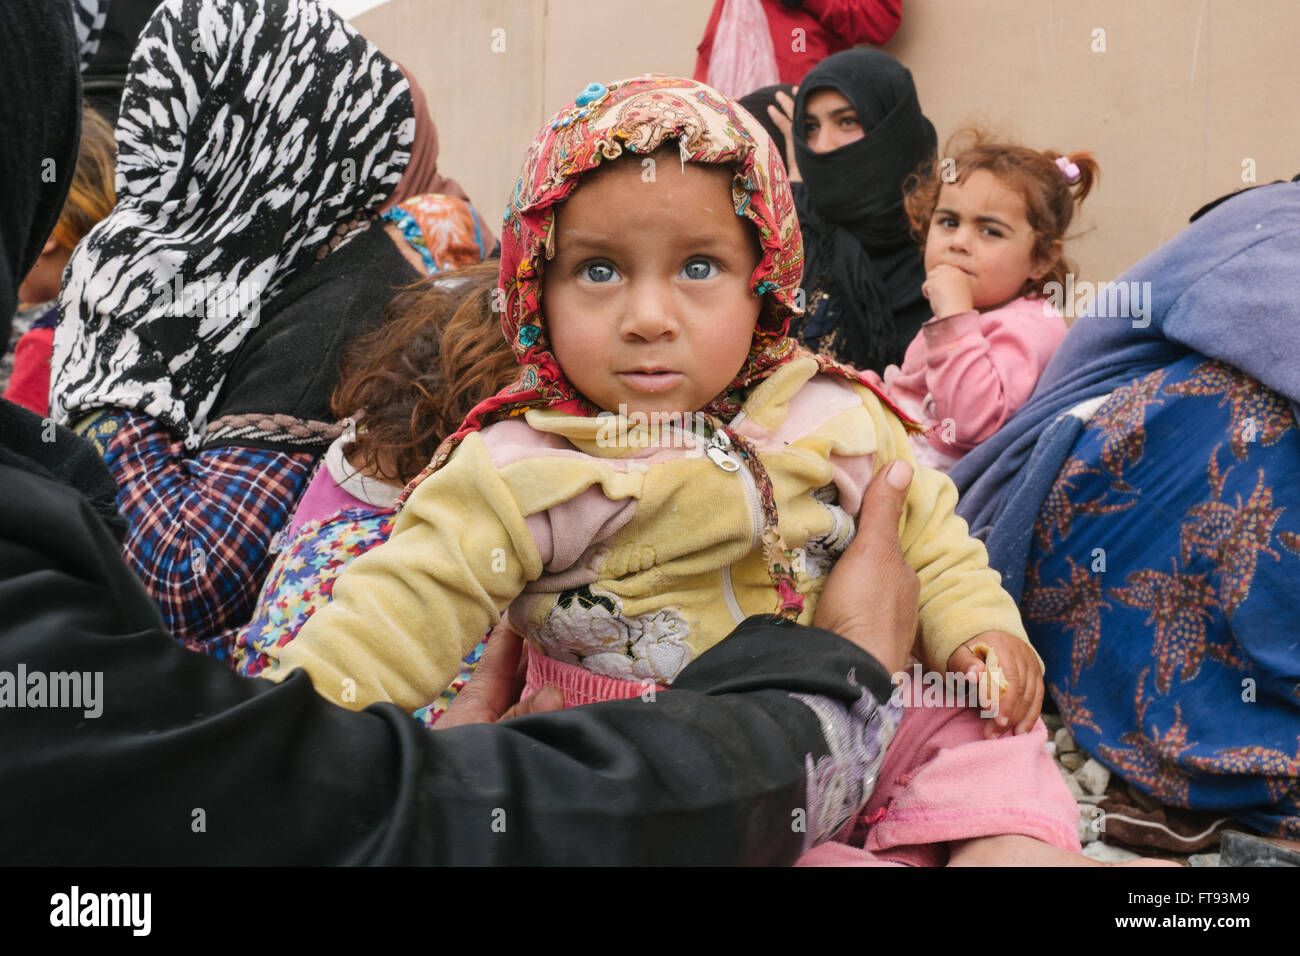 Camp de réfugiés dans le Kurdistan irakien - 15/03/2016 - Irak / Kurdistan iraquien - Des centaines de mendiants les réfugiés, surtout les enfants, sont Banque D'Images